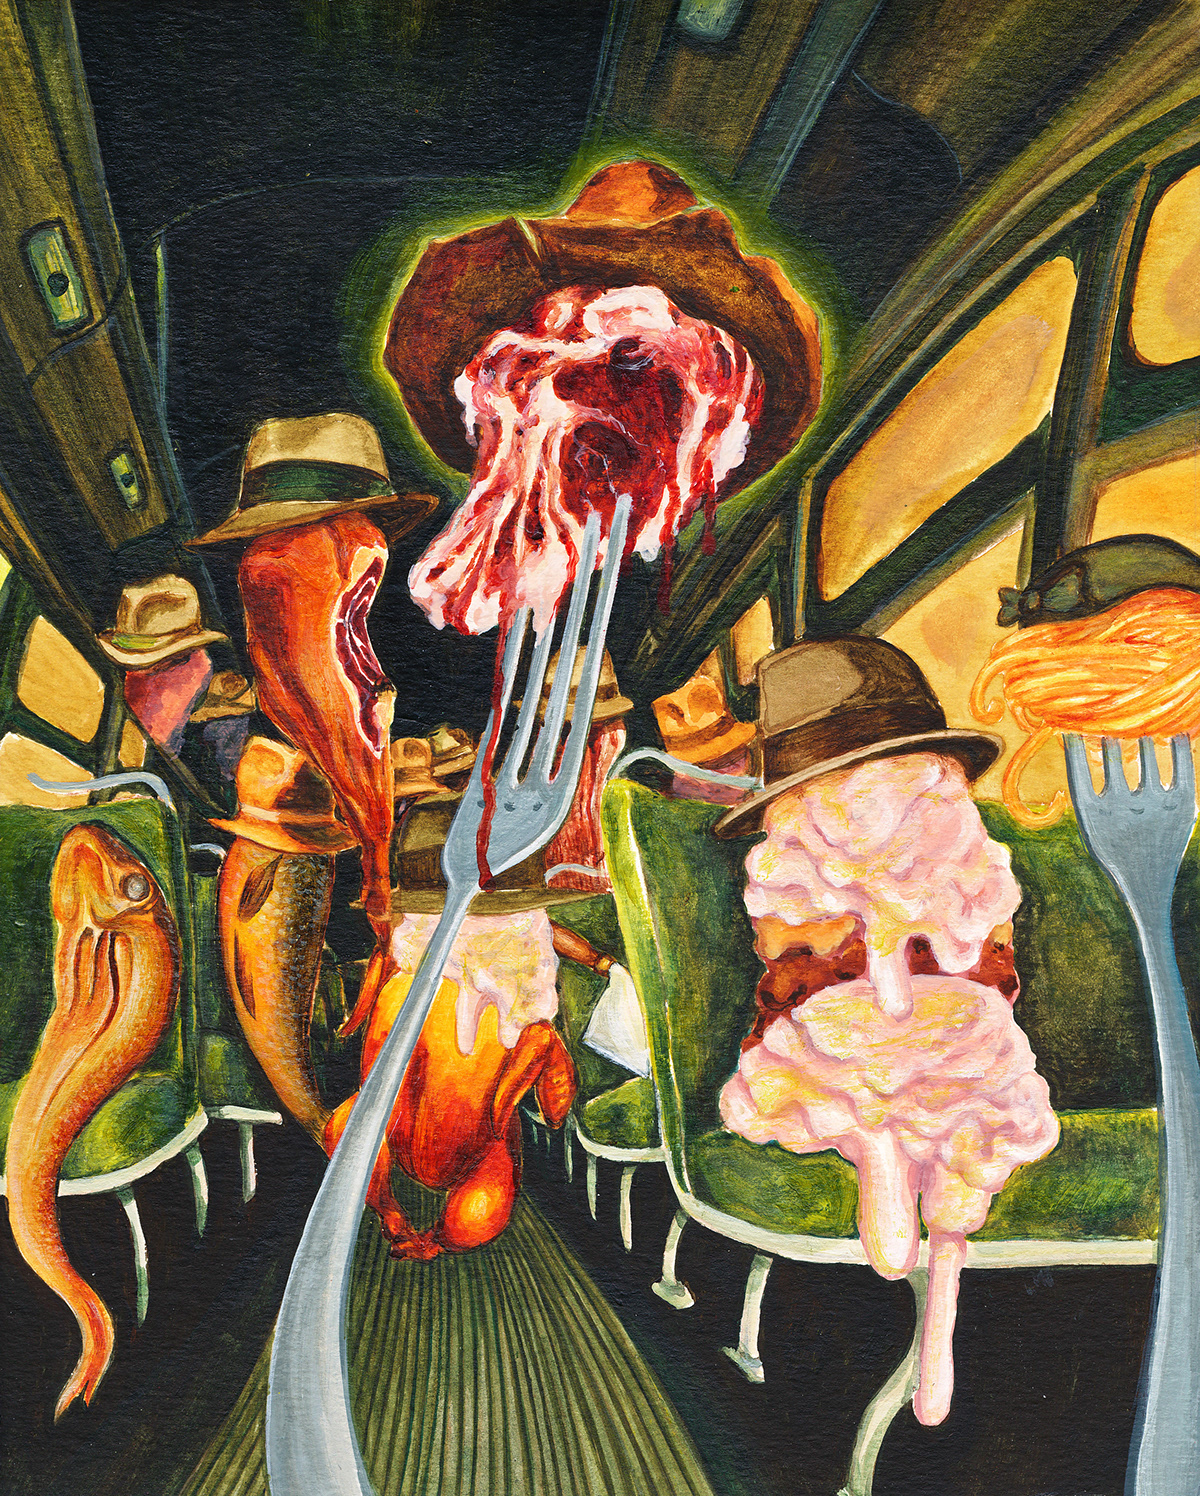 Queneau digital collage acrylic painting Surrealisme psychédélisme expressionisme   Pop Art surrealist expressionist psychedelia exercices de style